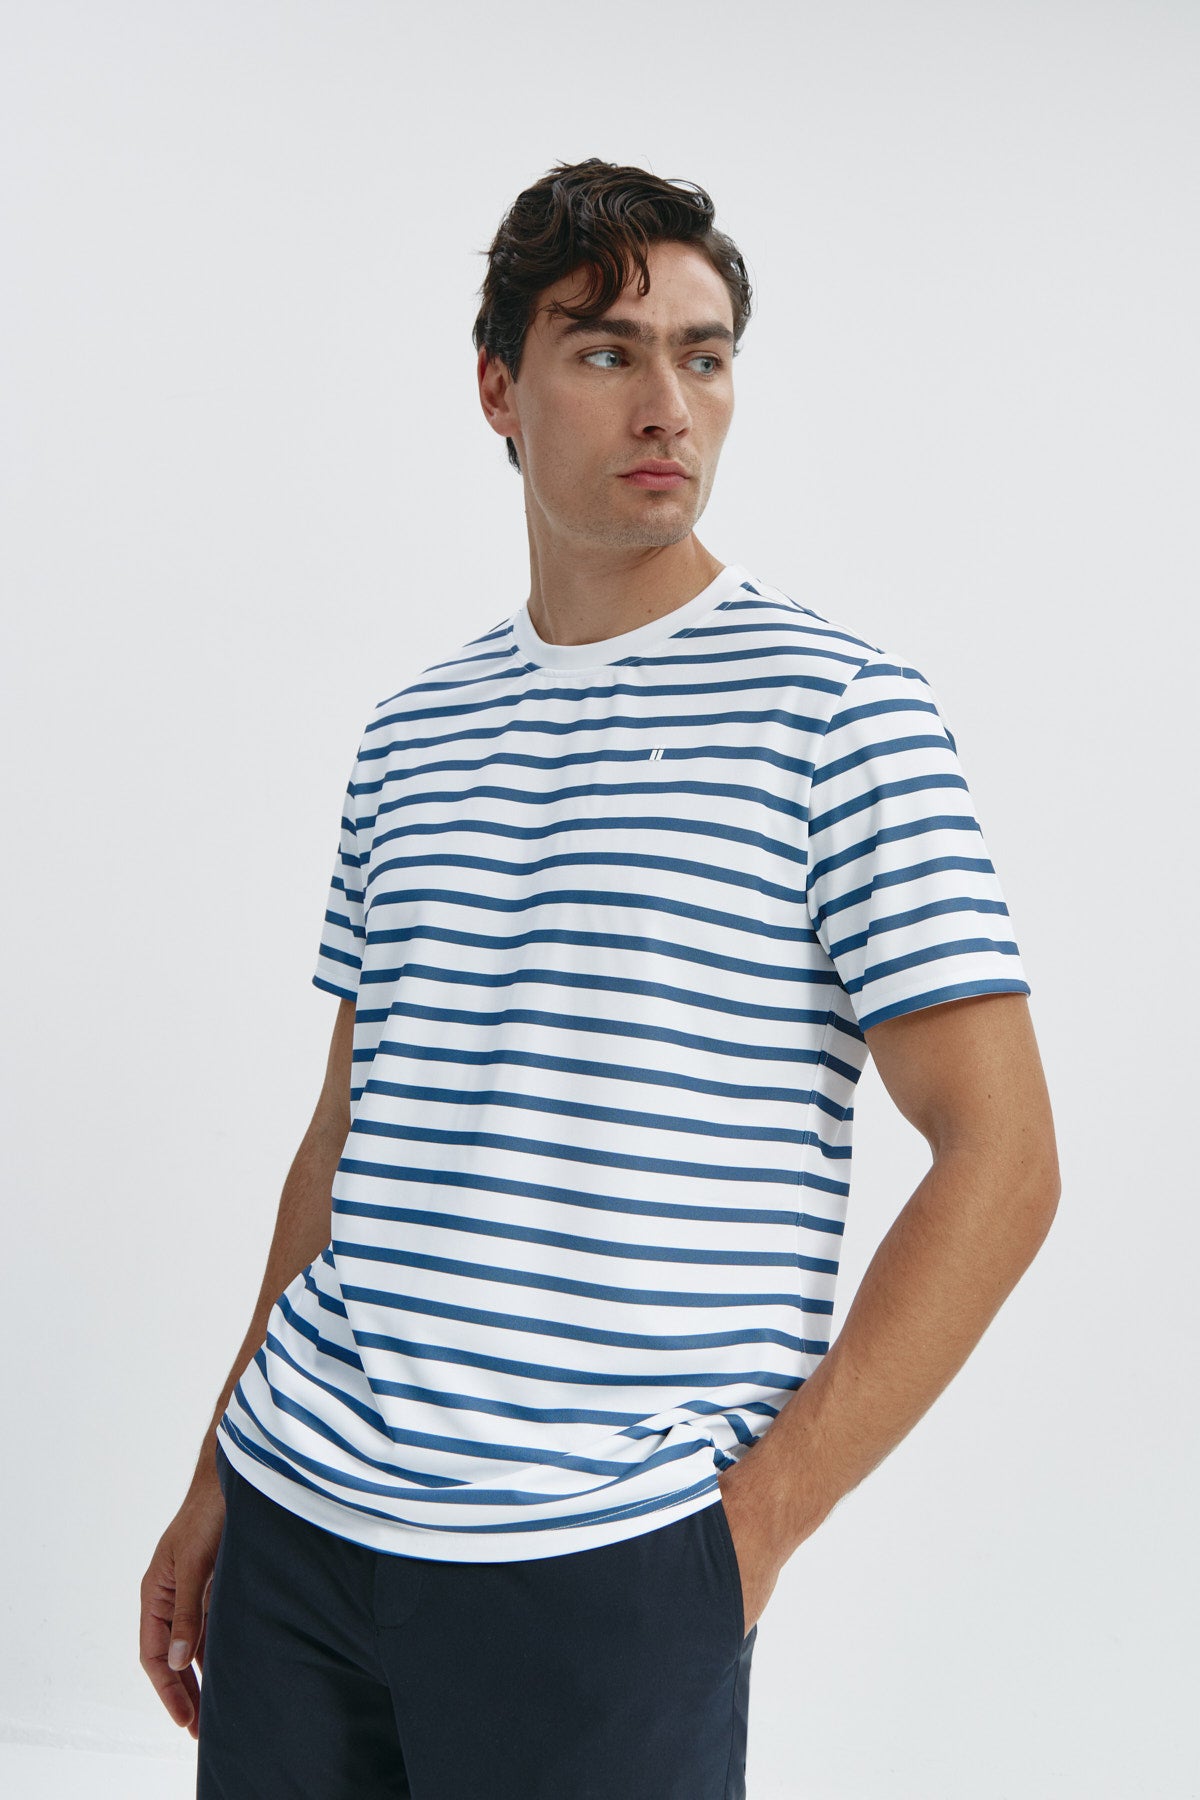 Camiseta de hombre con rayas marino de Sepiia, estilo y versatilidad en una prenda resistente. Foto frente